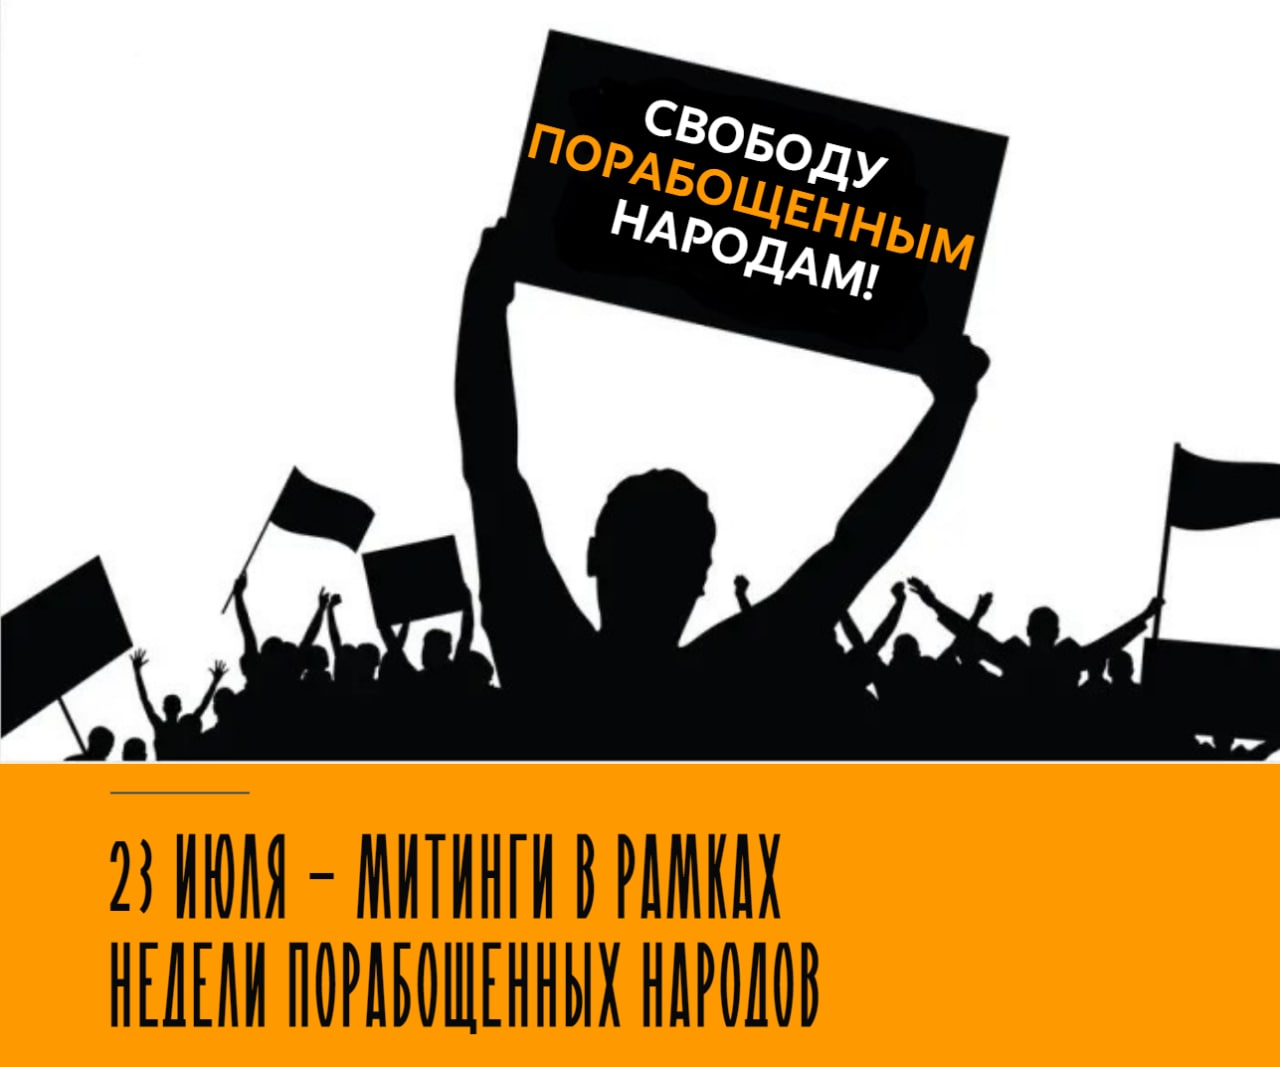 “Liberdade para os povos! Liberdade para as pessoas! Manifestações de rua serão realizadas em várias cidades da Rússia